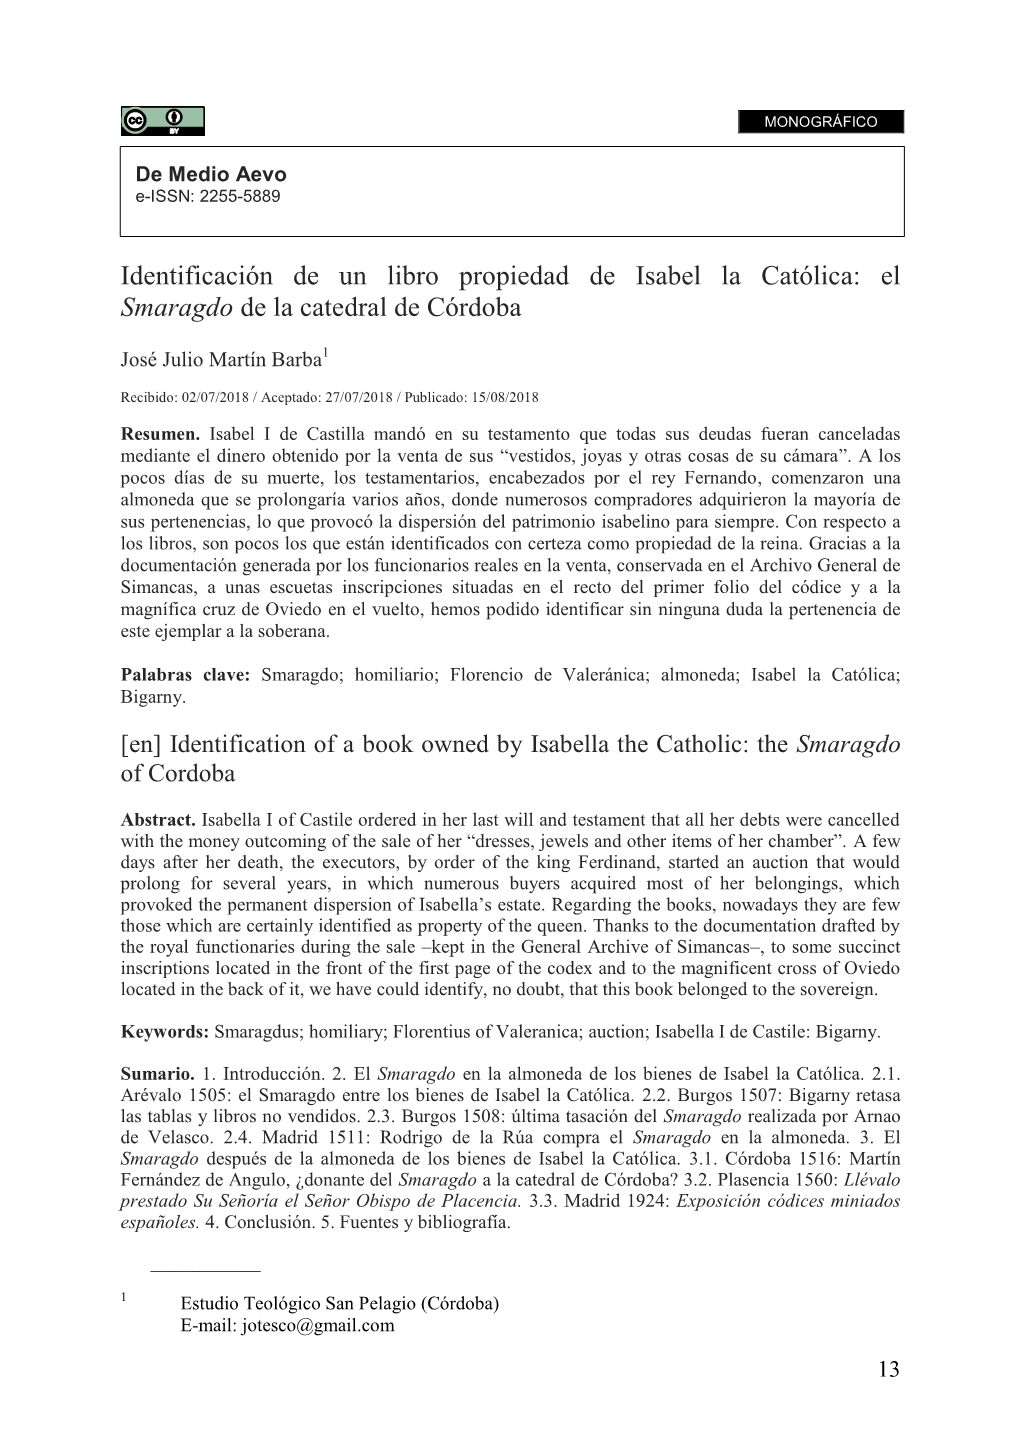 Identificación De Un Libro Propiedad De Isabel La Católica: El Smaragdo De La Catedral De Córdoba